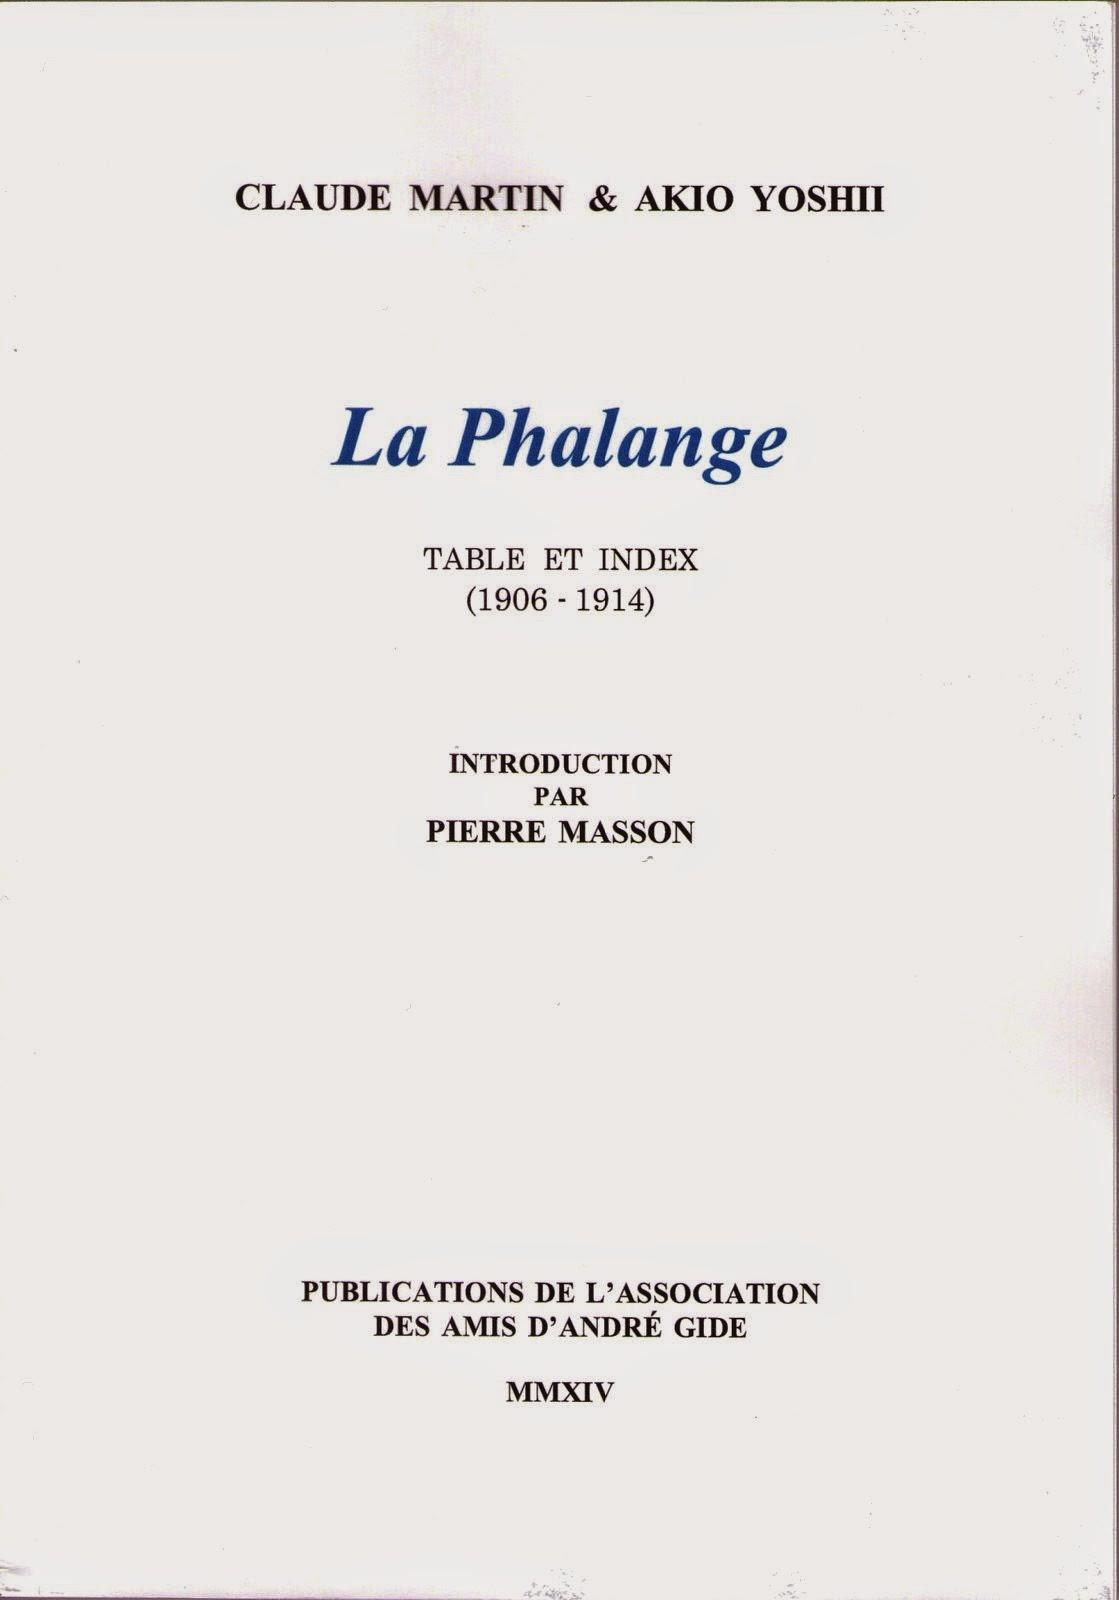 Un index pour La Phalange